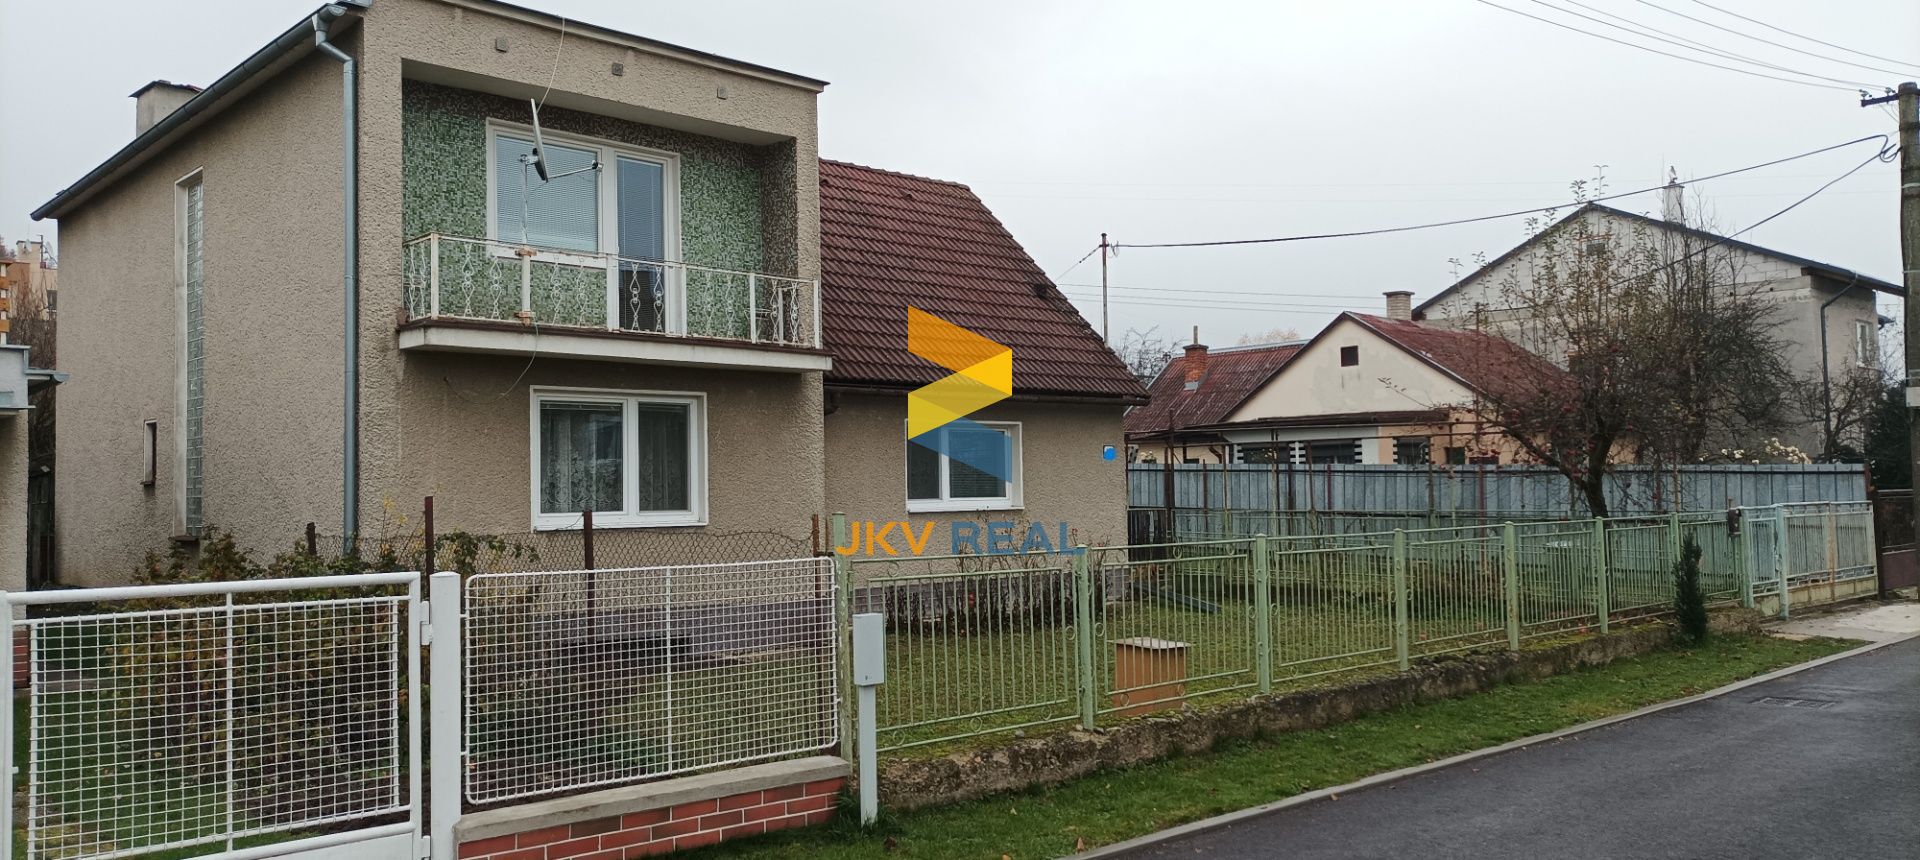 Realitná kancelária JKV REAL so súhlasom majiteľa ponúka na predaj rodinný dom v Pravenci, časť kolónia.